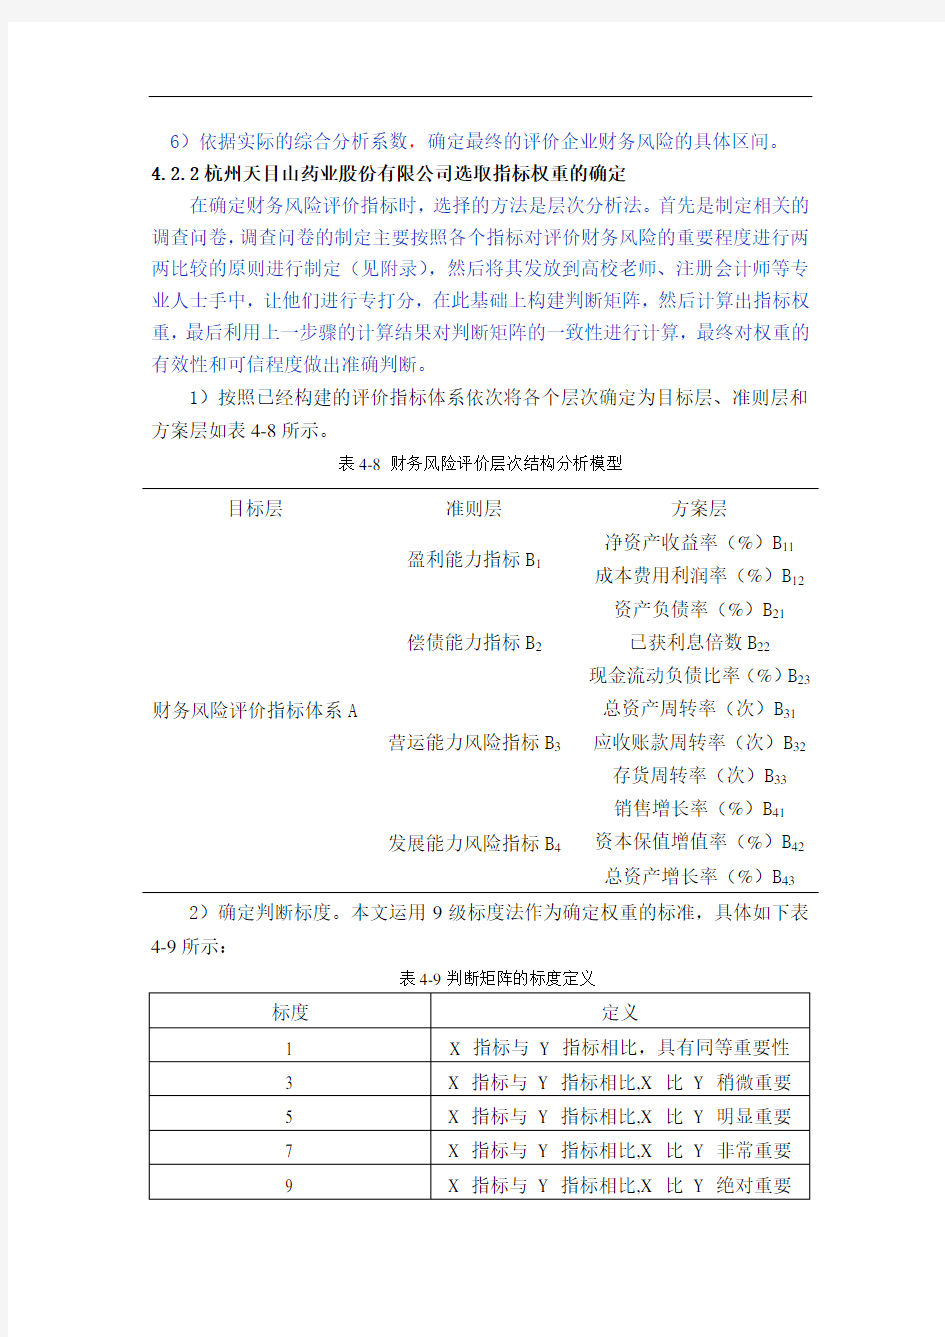 杭州天目山药业股份有限公司财务风险评价体系的建立